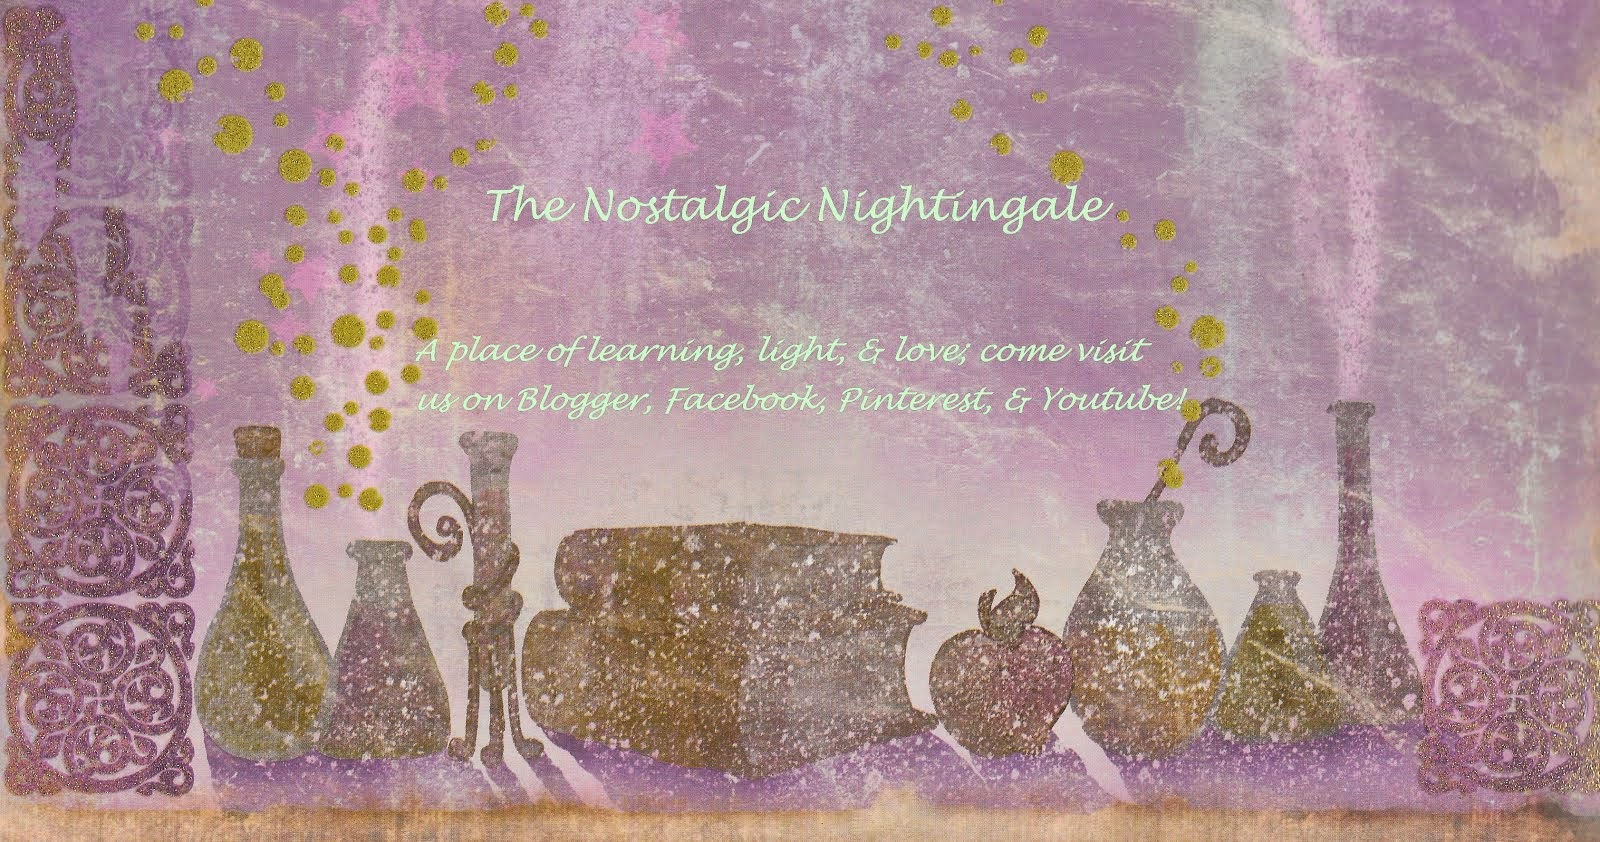 The Nostalgic Nightingale